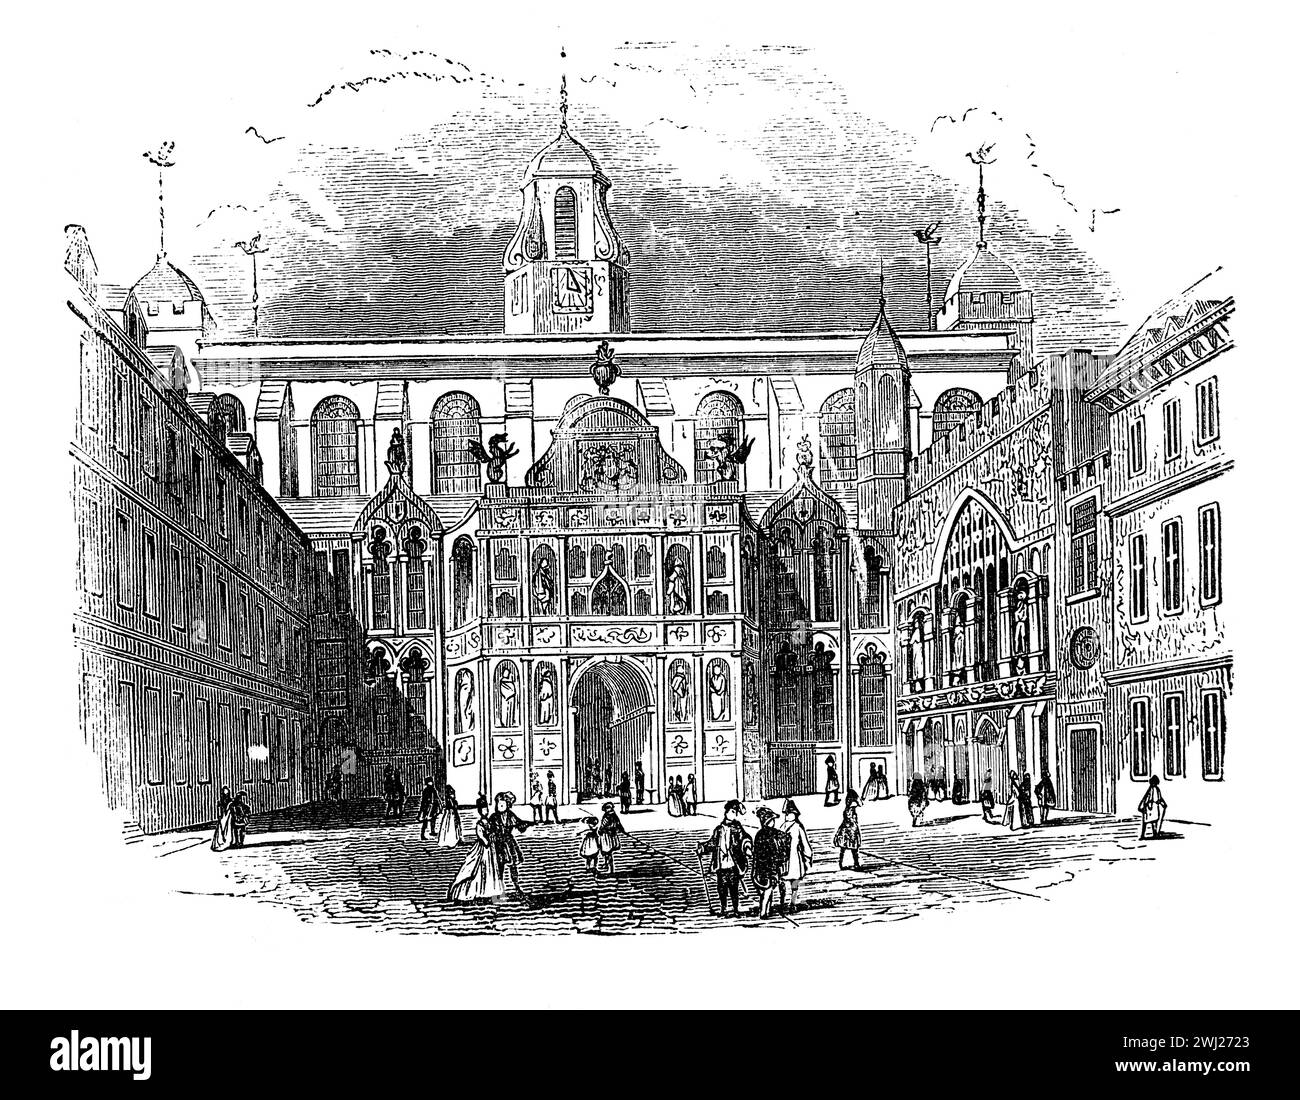 Le Guildhall, ville de Londres vers 1750. Illustration en noir et blanc de la 'vieille Angleterre' publiée par James Sangster en 1860. Banque D'Images